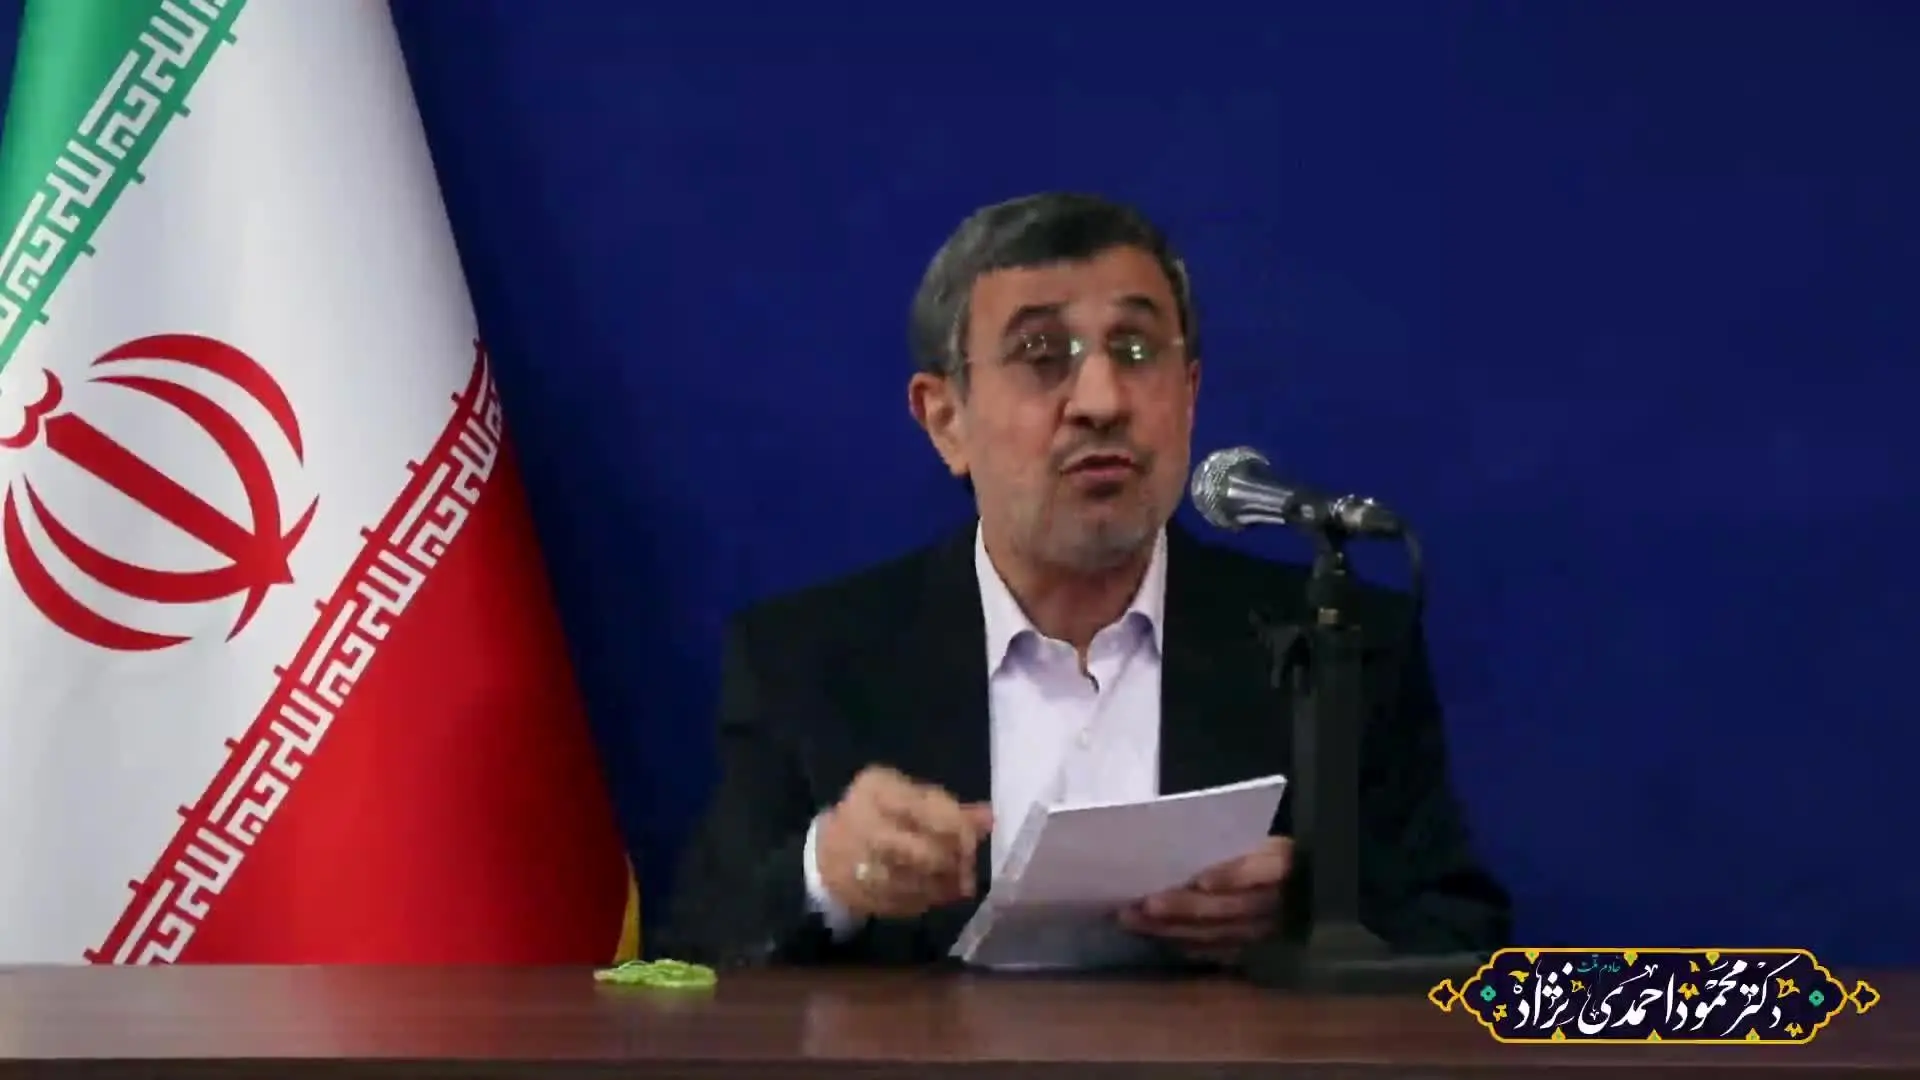 احمدی نژاد: چرا انقلاب کردیم؟ انتظارات مردم از جمهوری اسلامی برآورده نشده